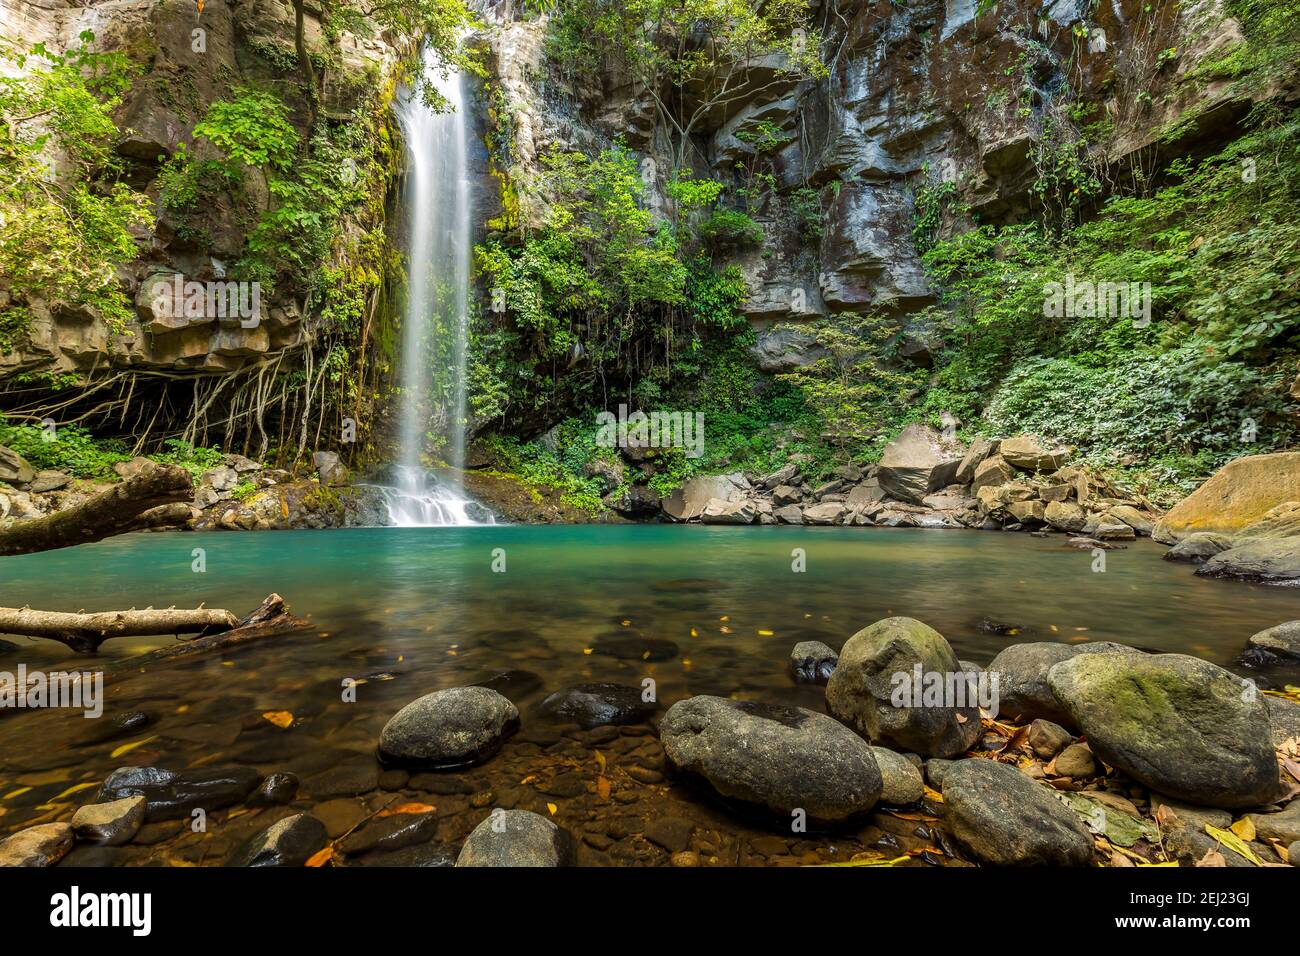 Versteckter Wasserfall umgeben von grünen Bäumen, Vegetation, Felsen, Blätter schwimmend auf grünem und klarem Wasser, Rincon de la Vieja, Guanacaste, Costa Rica Stockfoto